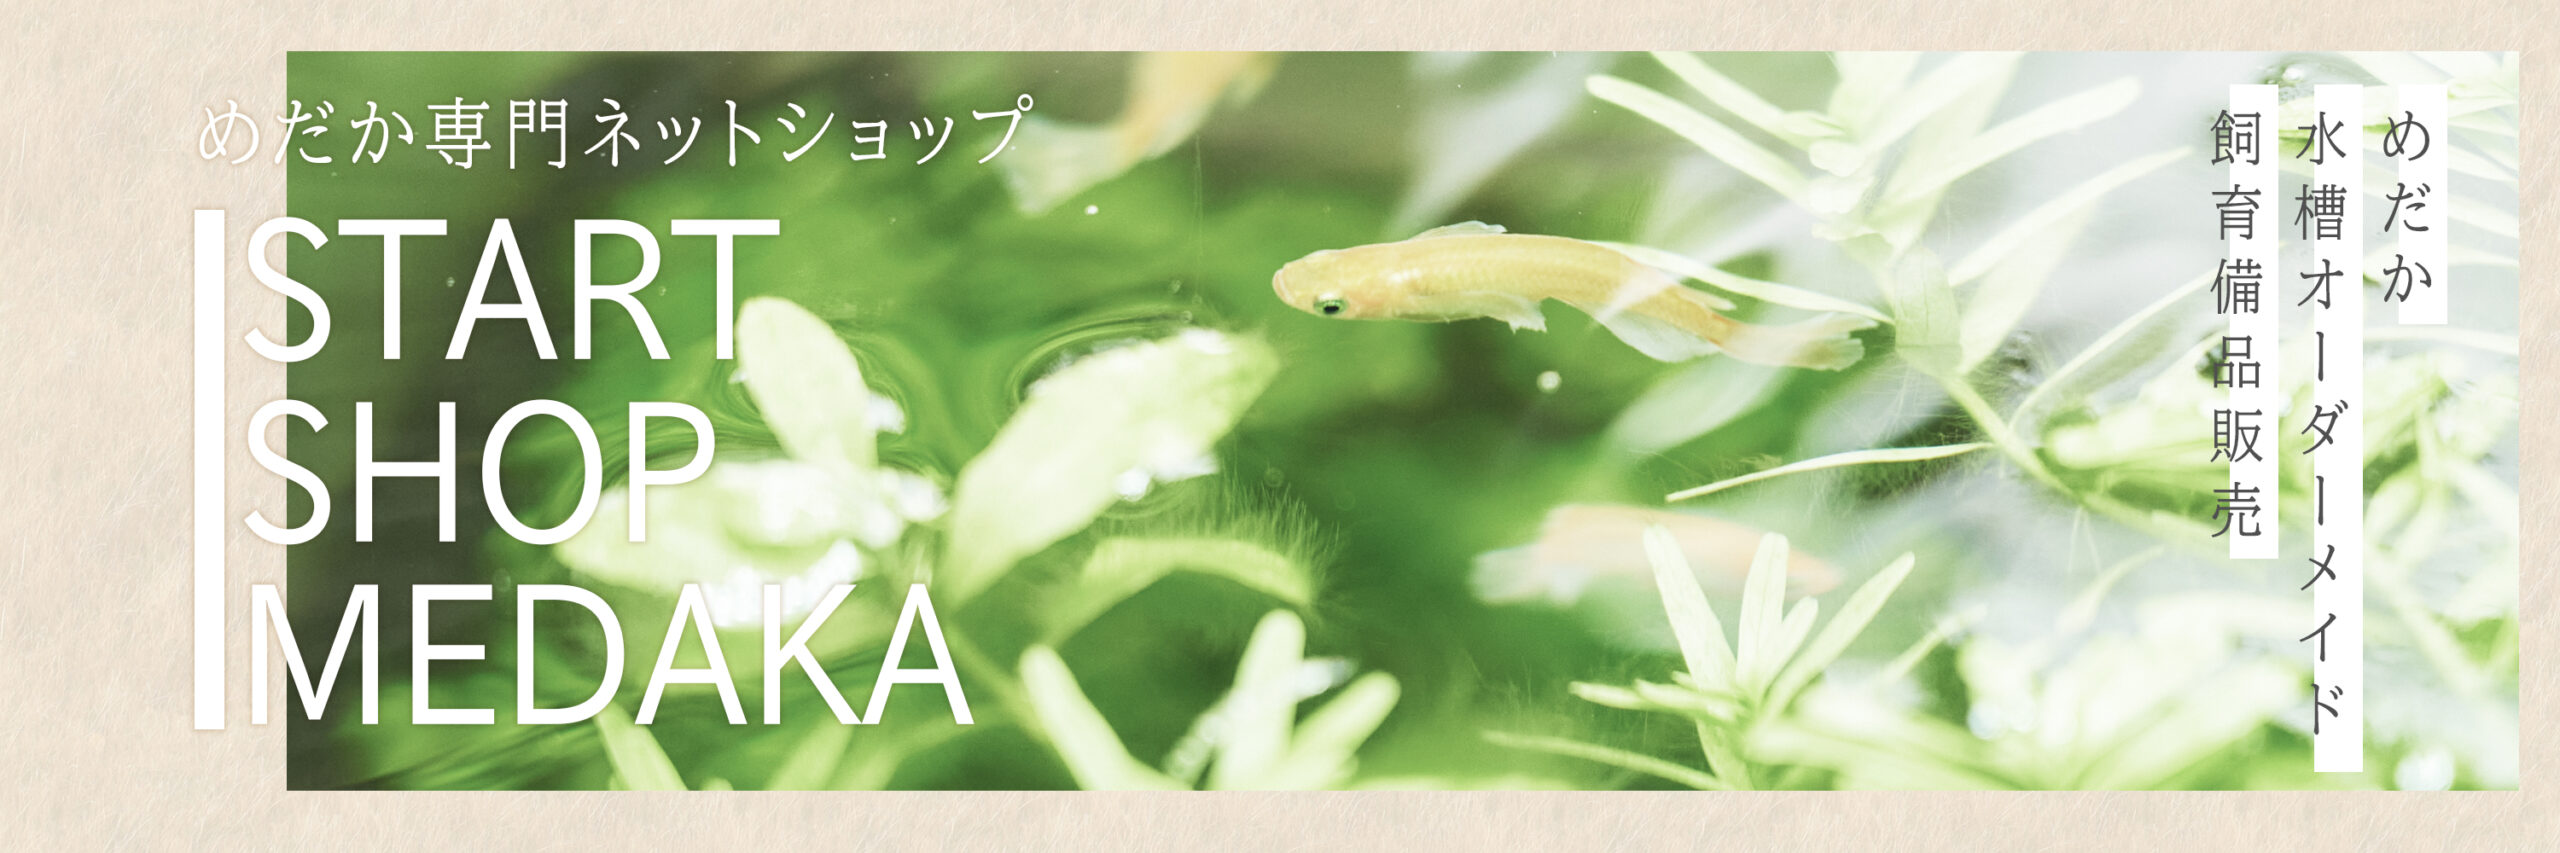 めだか水槽アナカリス水草の花です 尼崎市の就労継続支援b型 Start Work